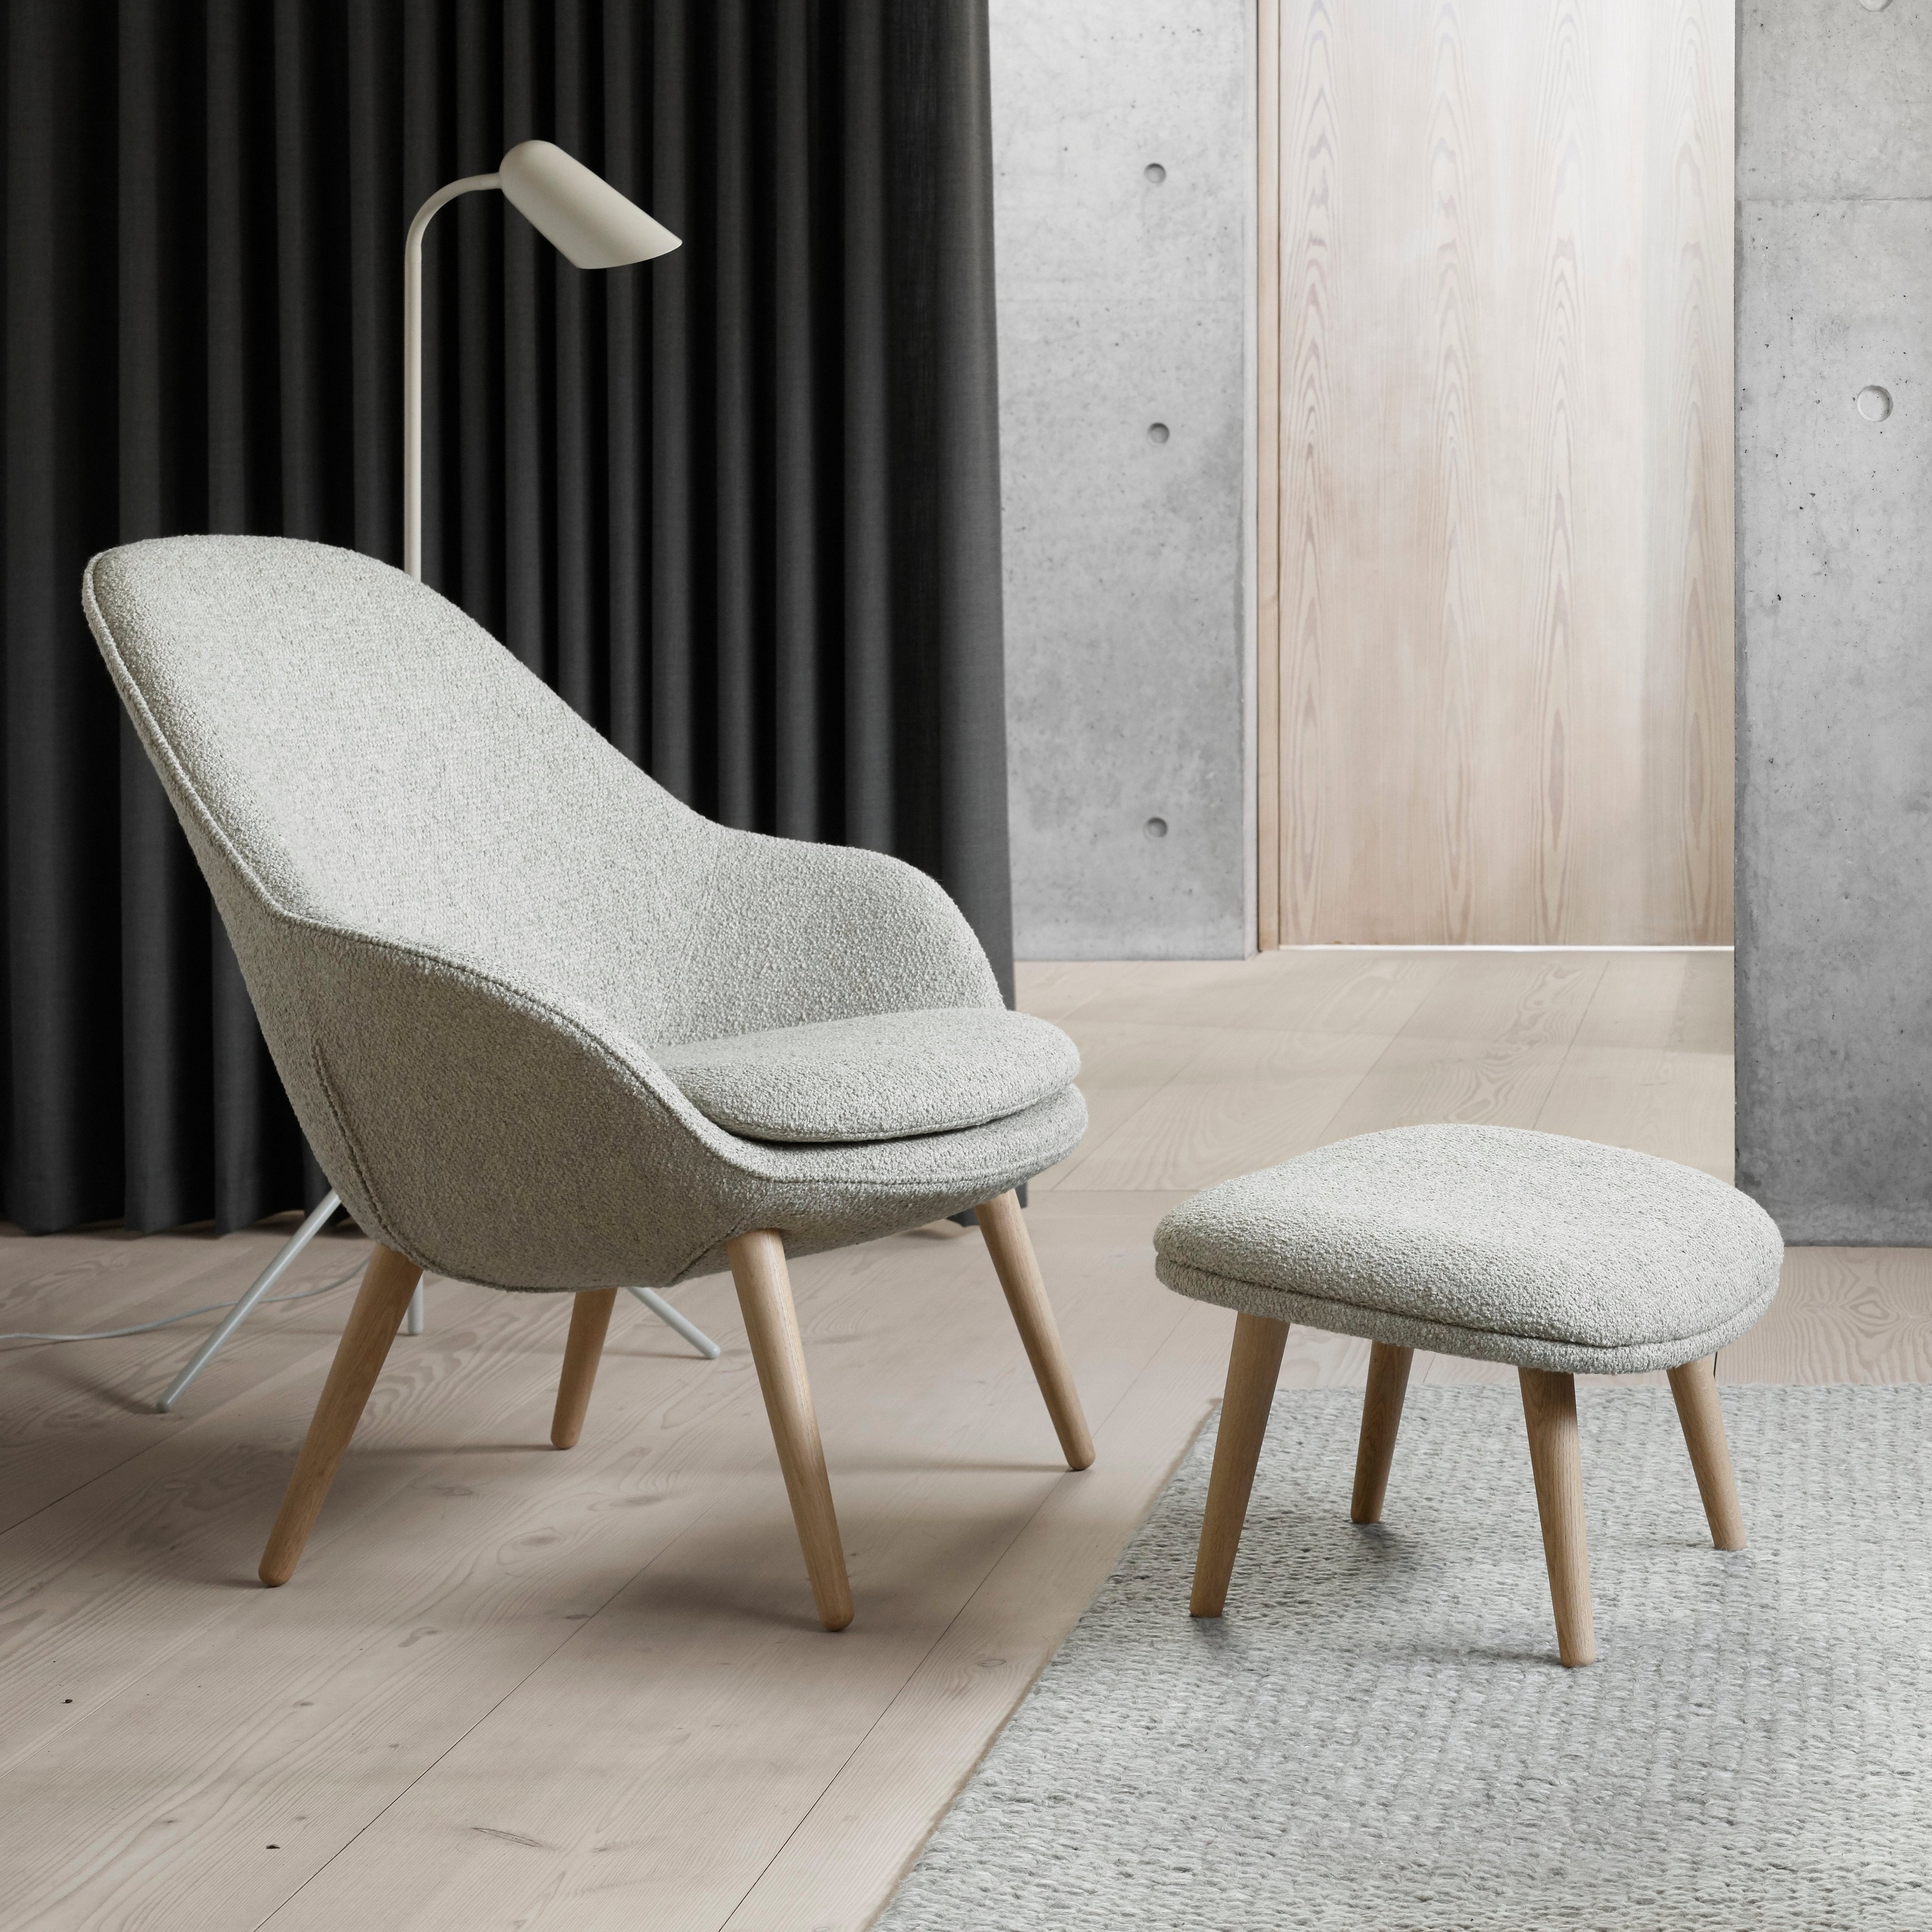 Moderne stoel met bijpassende poef, vloerlamp, donkere gordijnen en betonnen accenten.